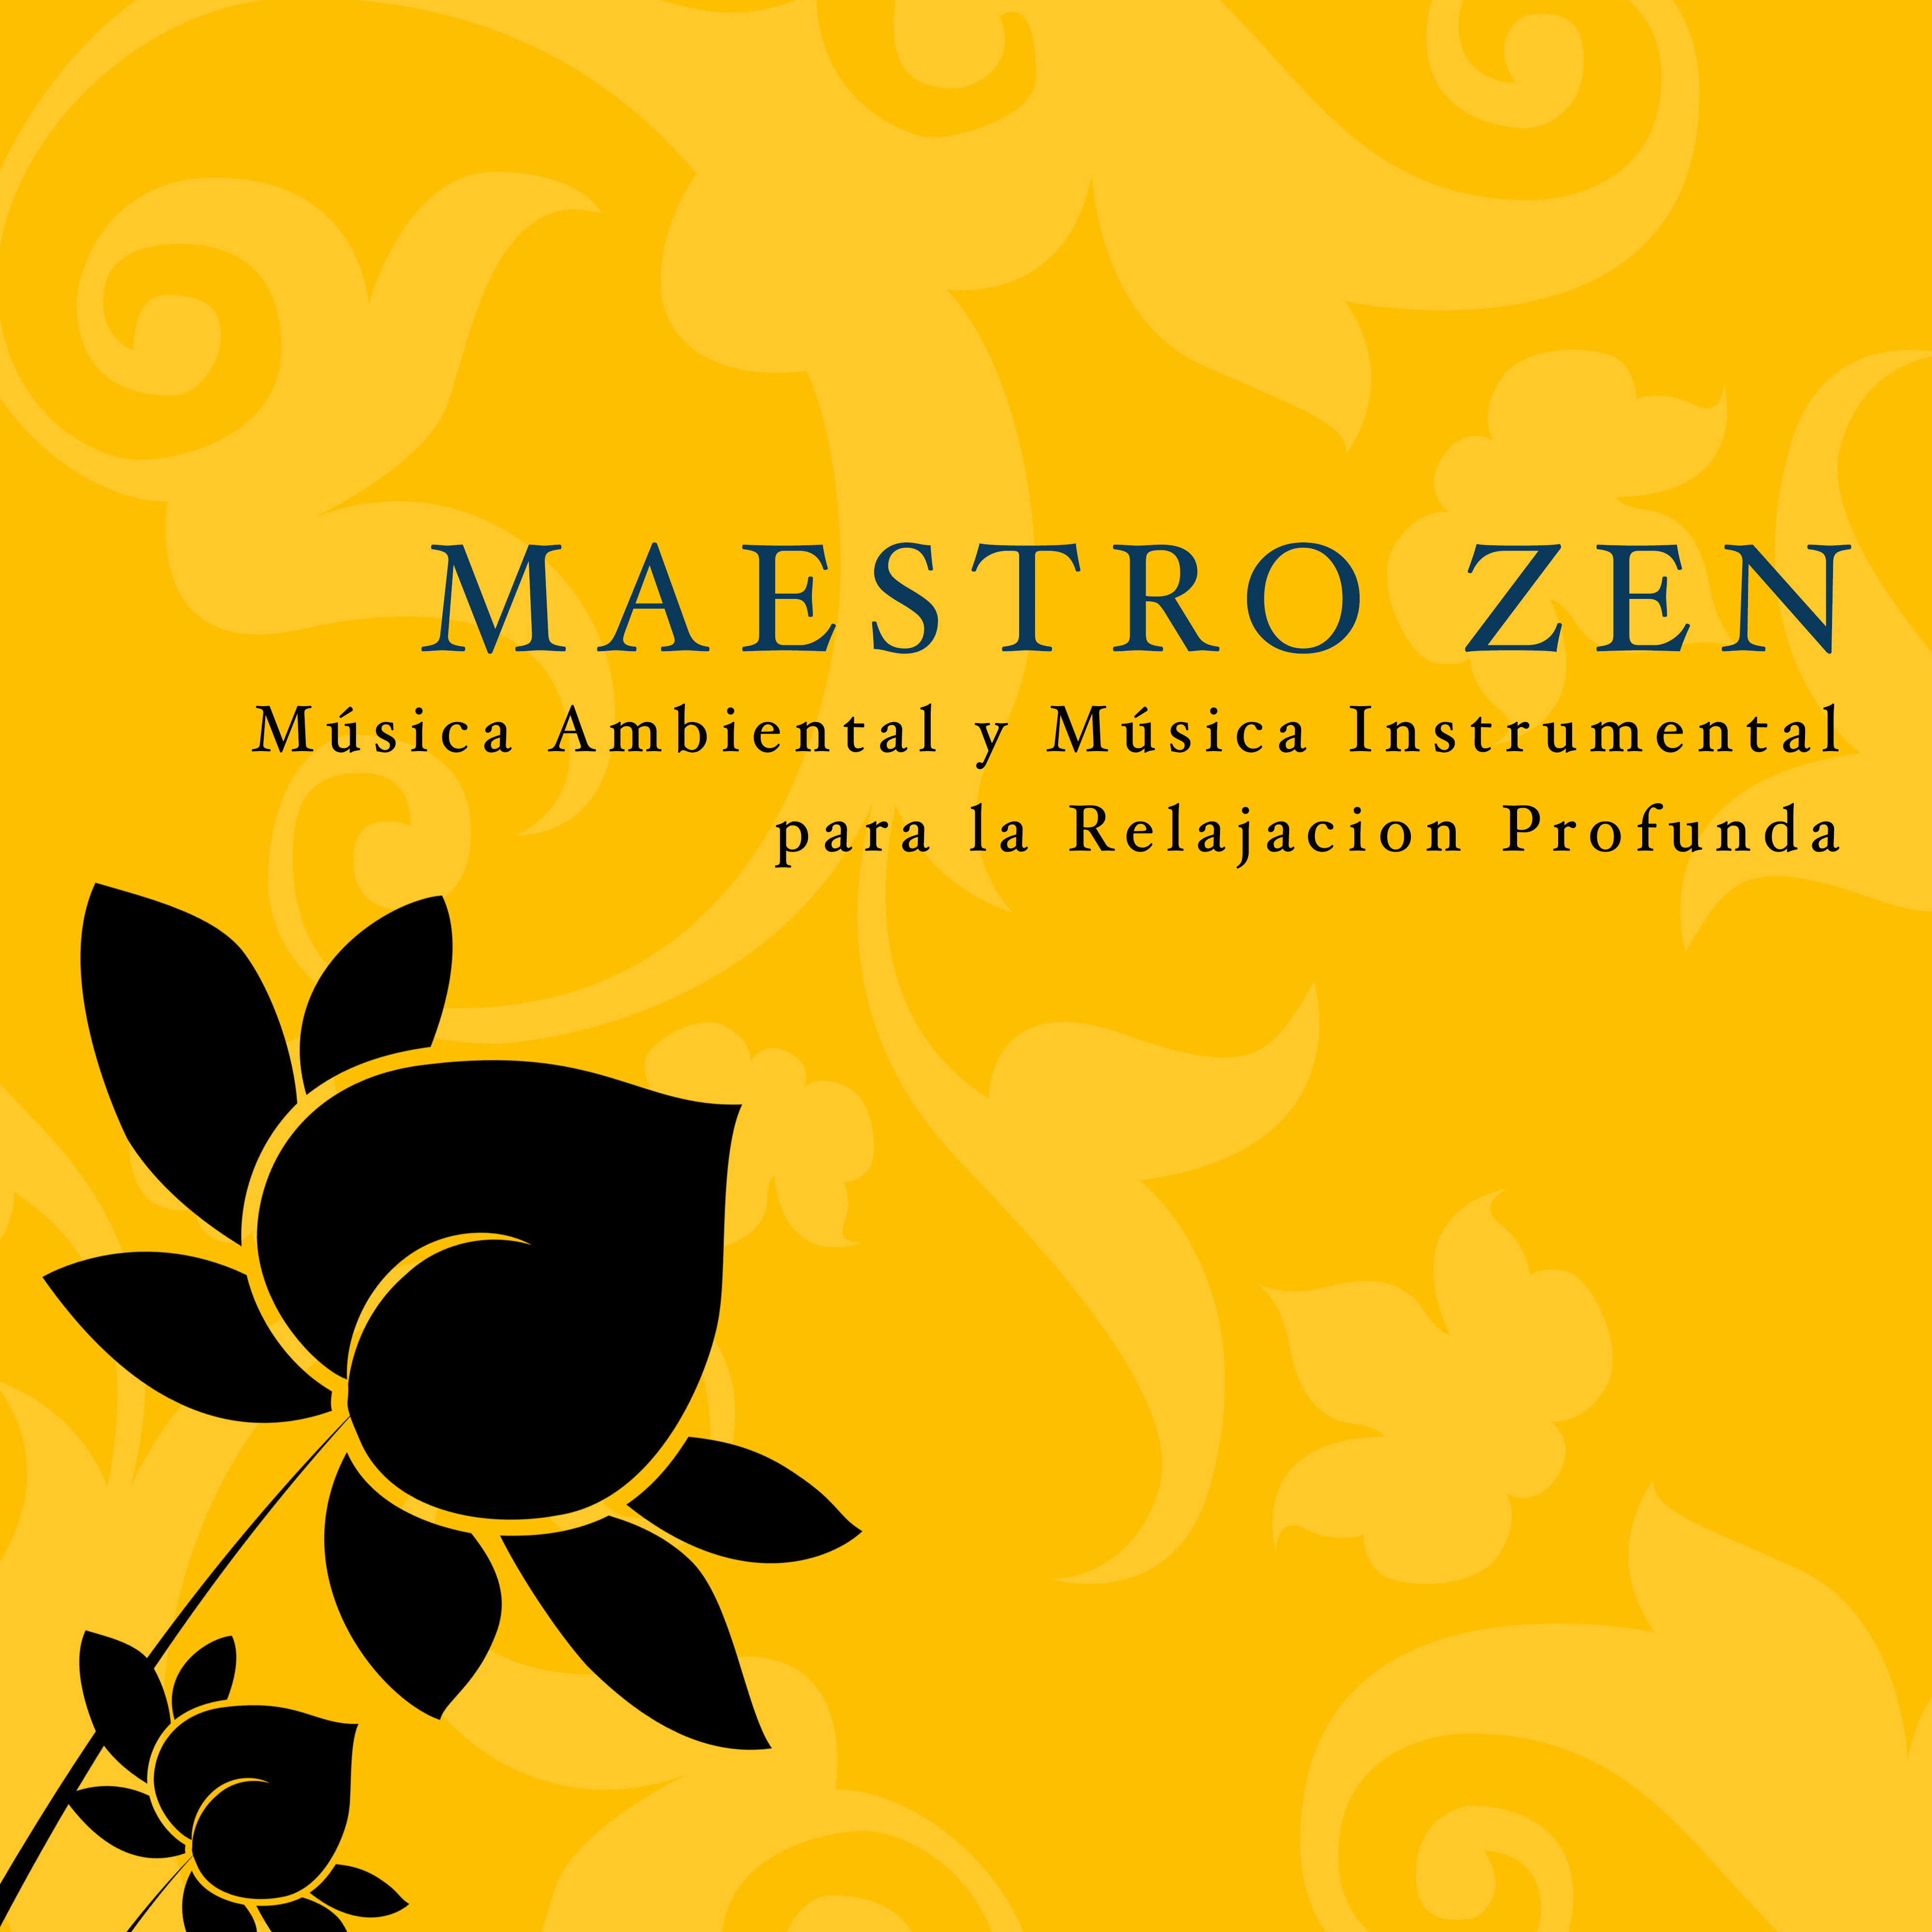 Maestro Zen: Mu sica Ambiental y Mu sica Instrumental para la Relajacion Profunda